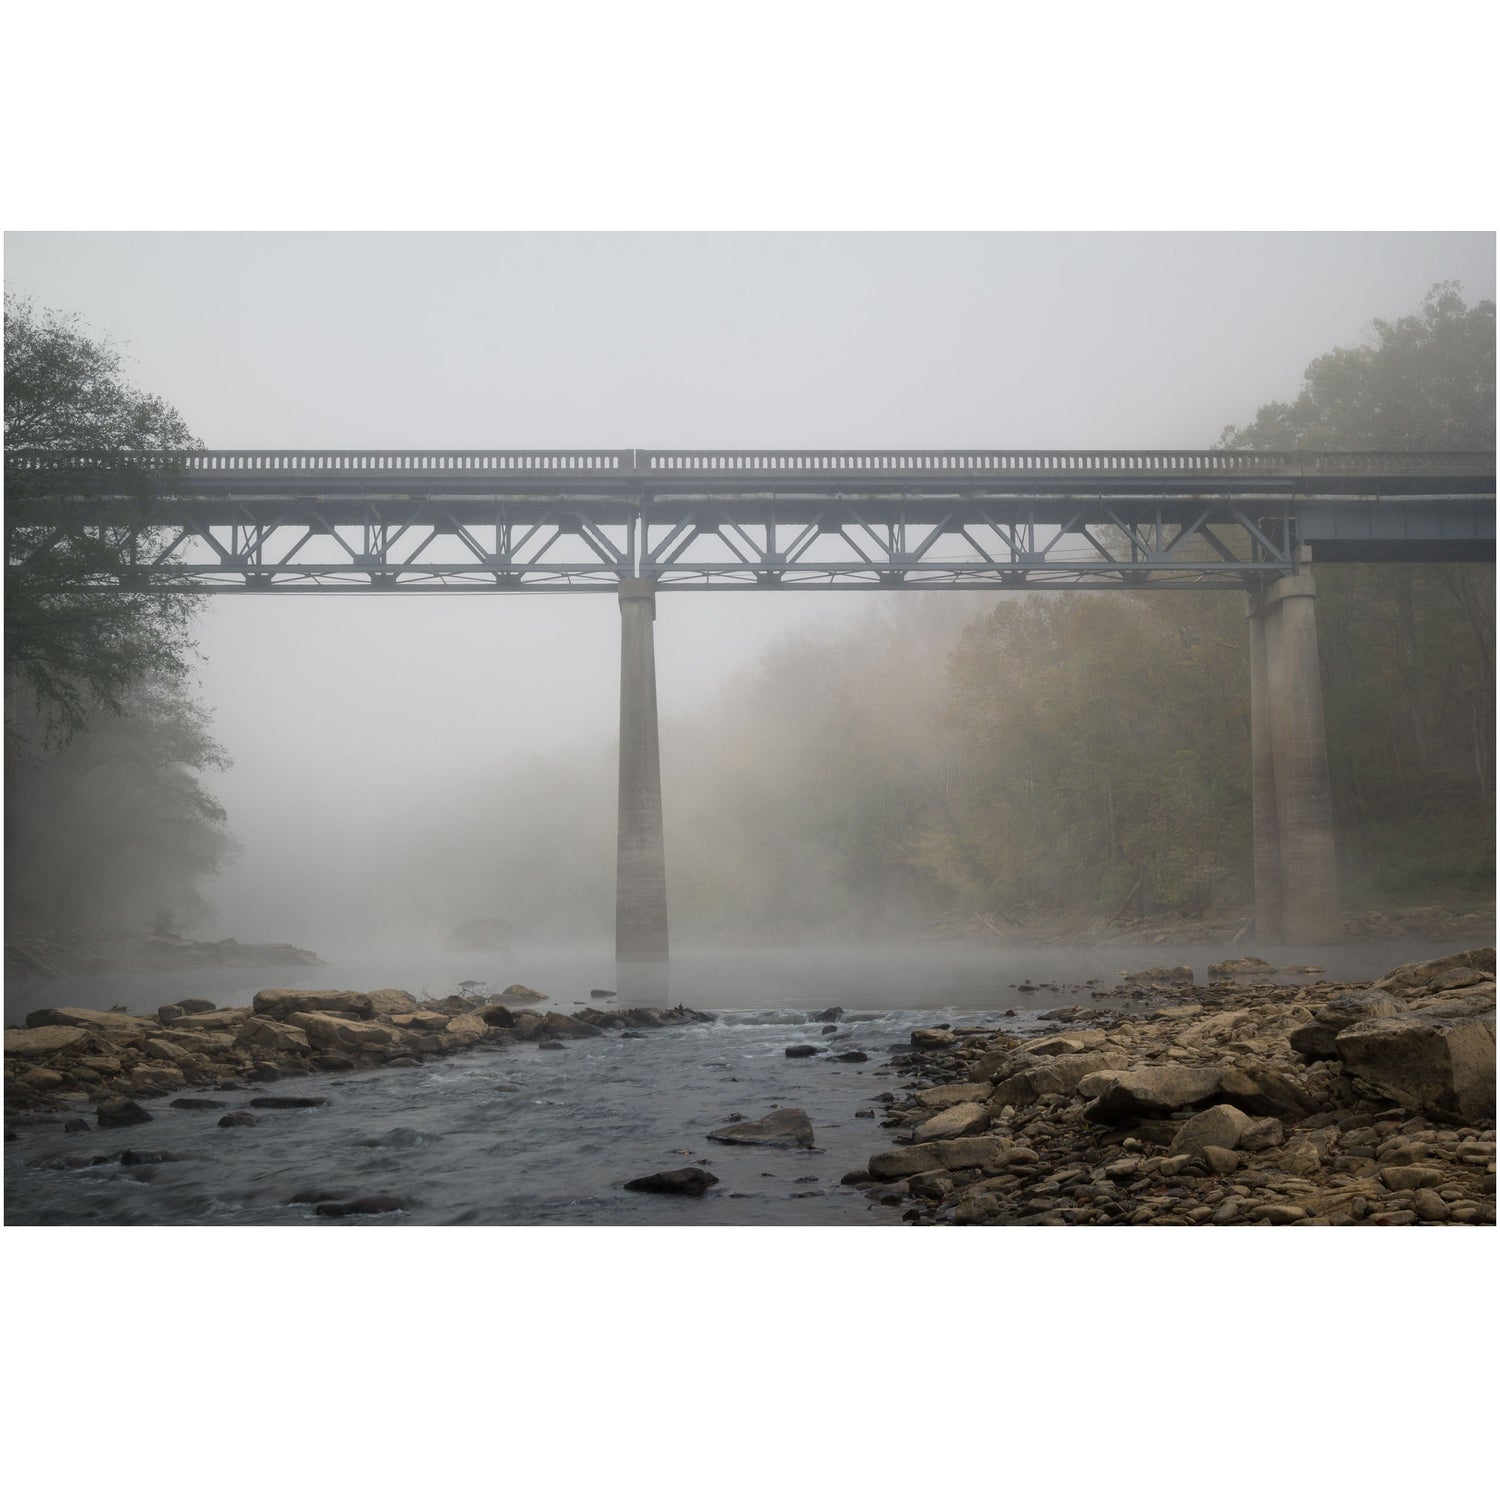 Yamacraw Bridge in Kentucky